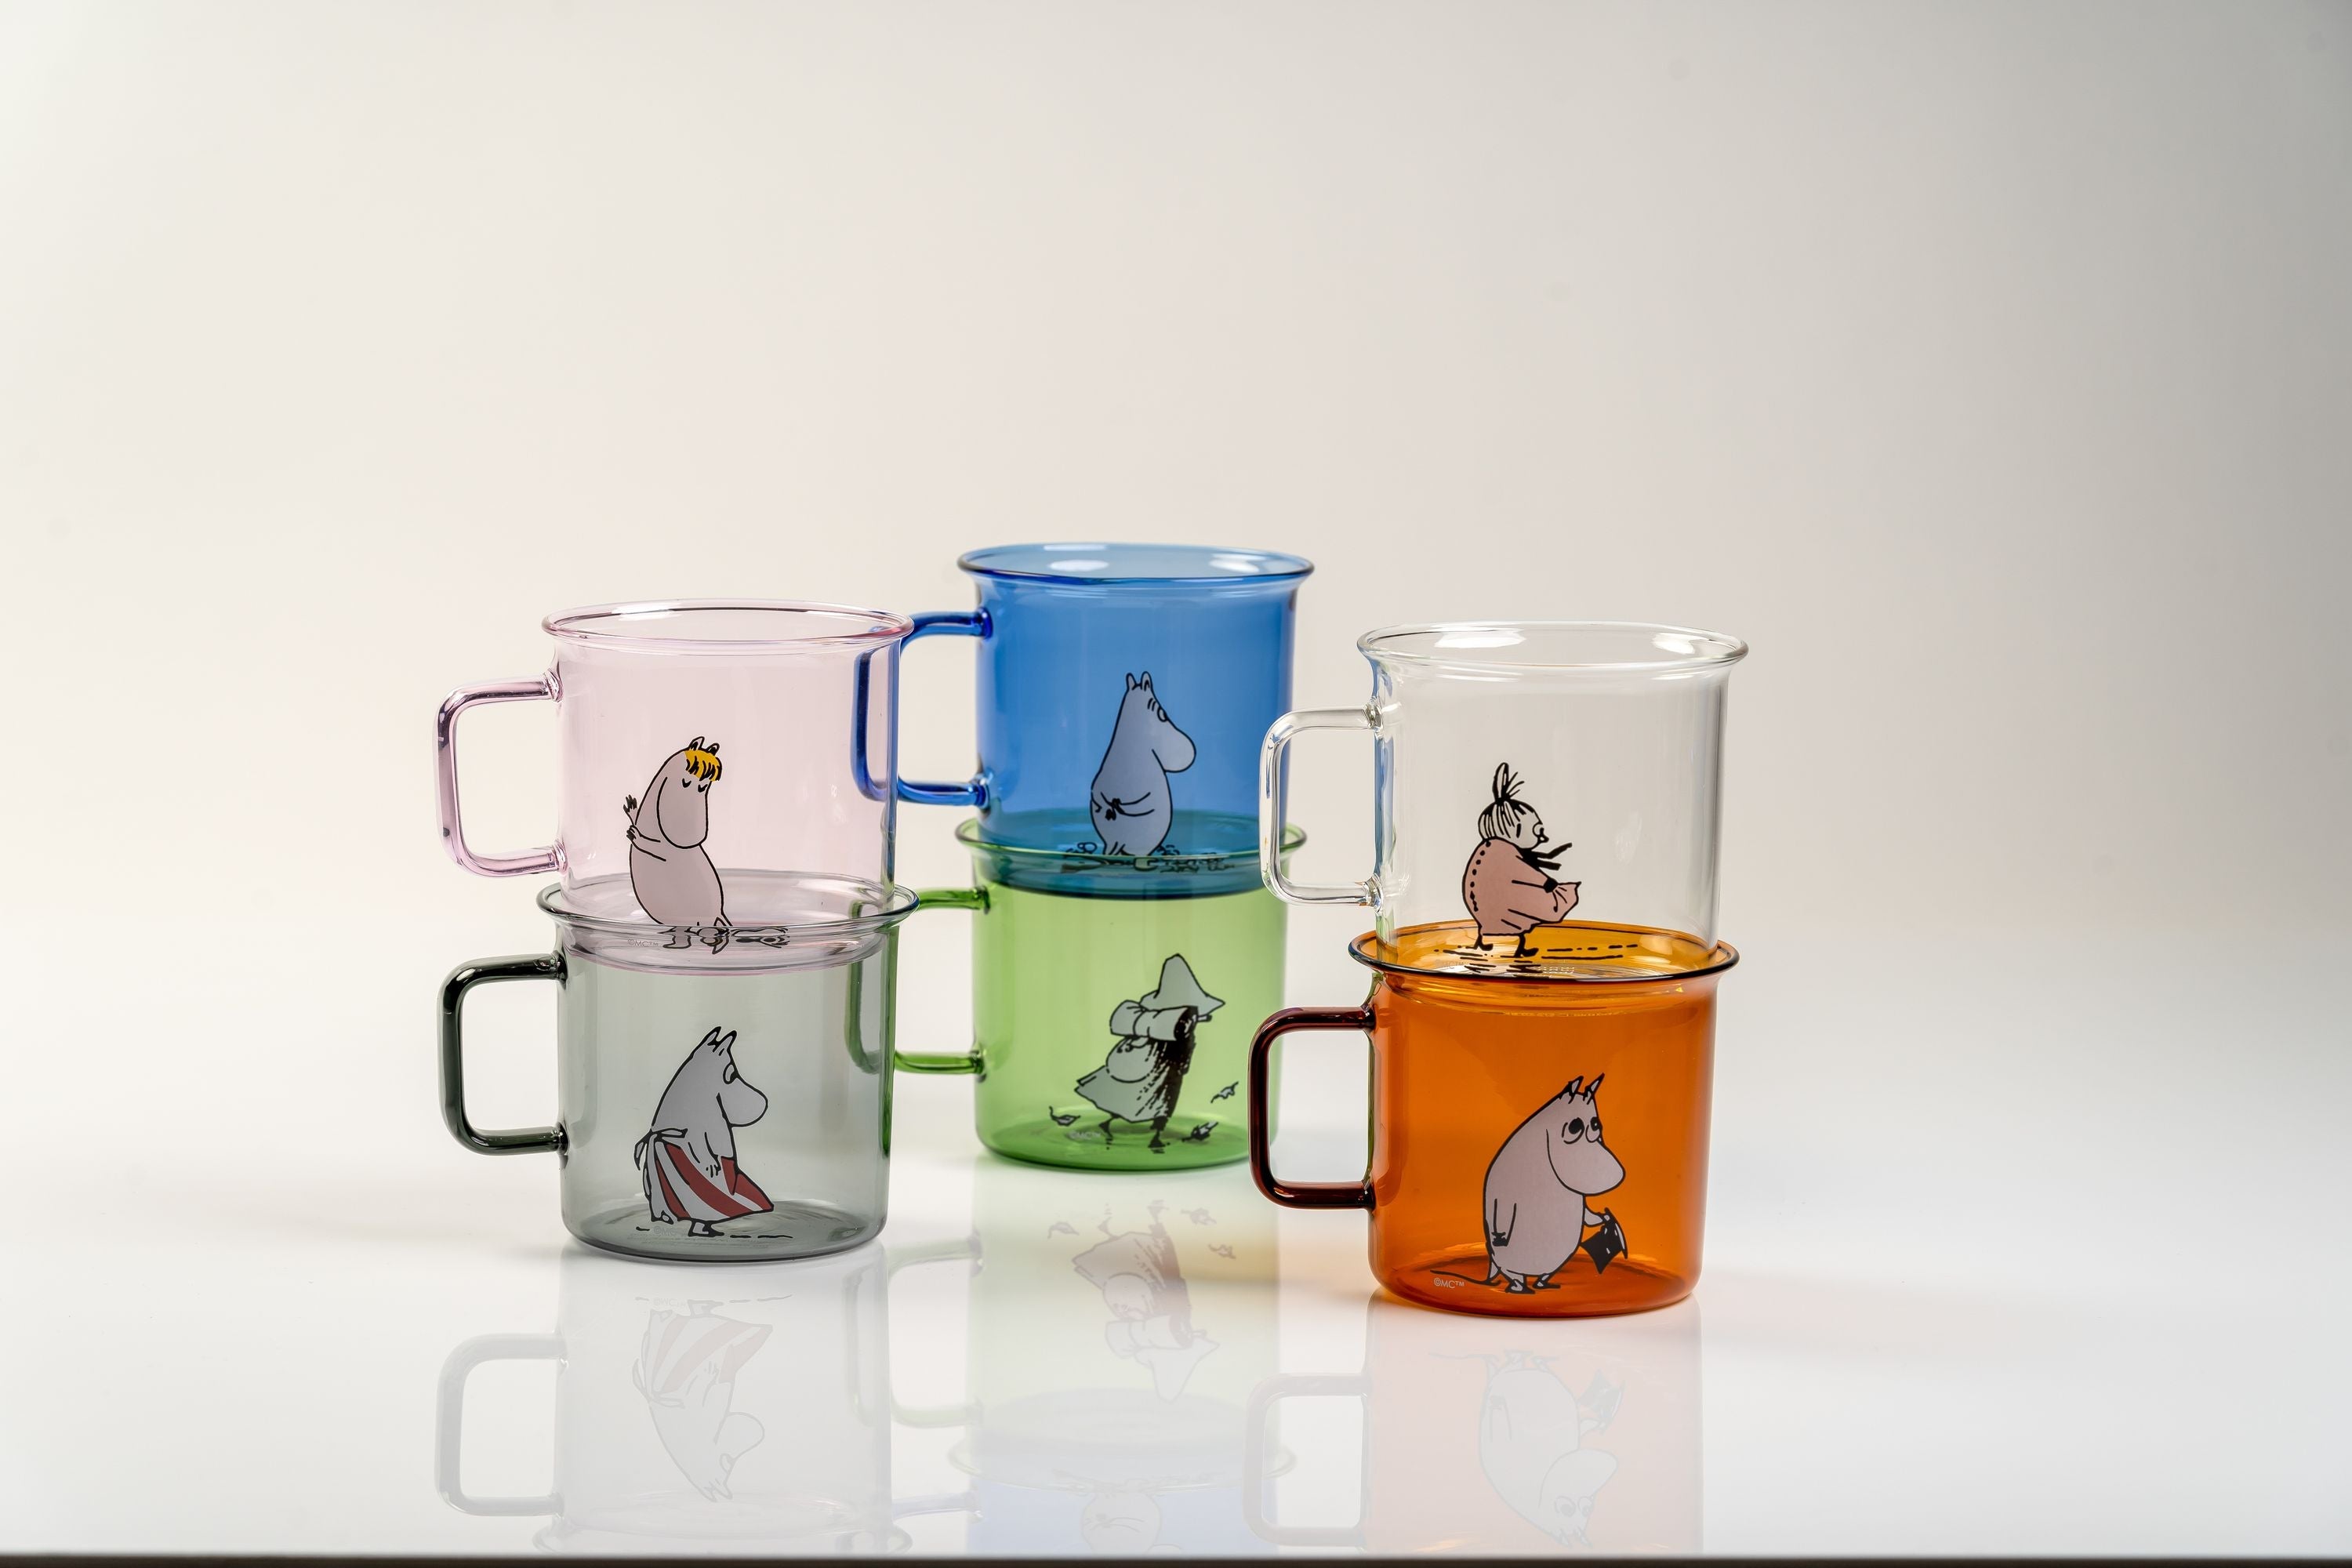 Muurla Moomin Glass Mug, Moominmamma